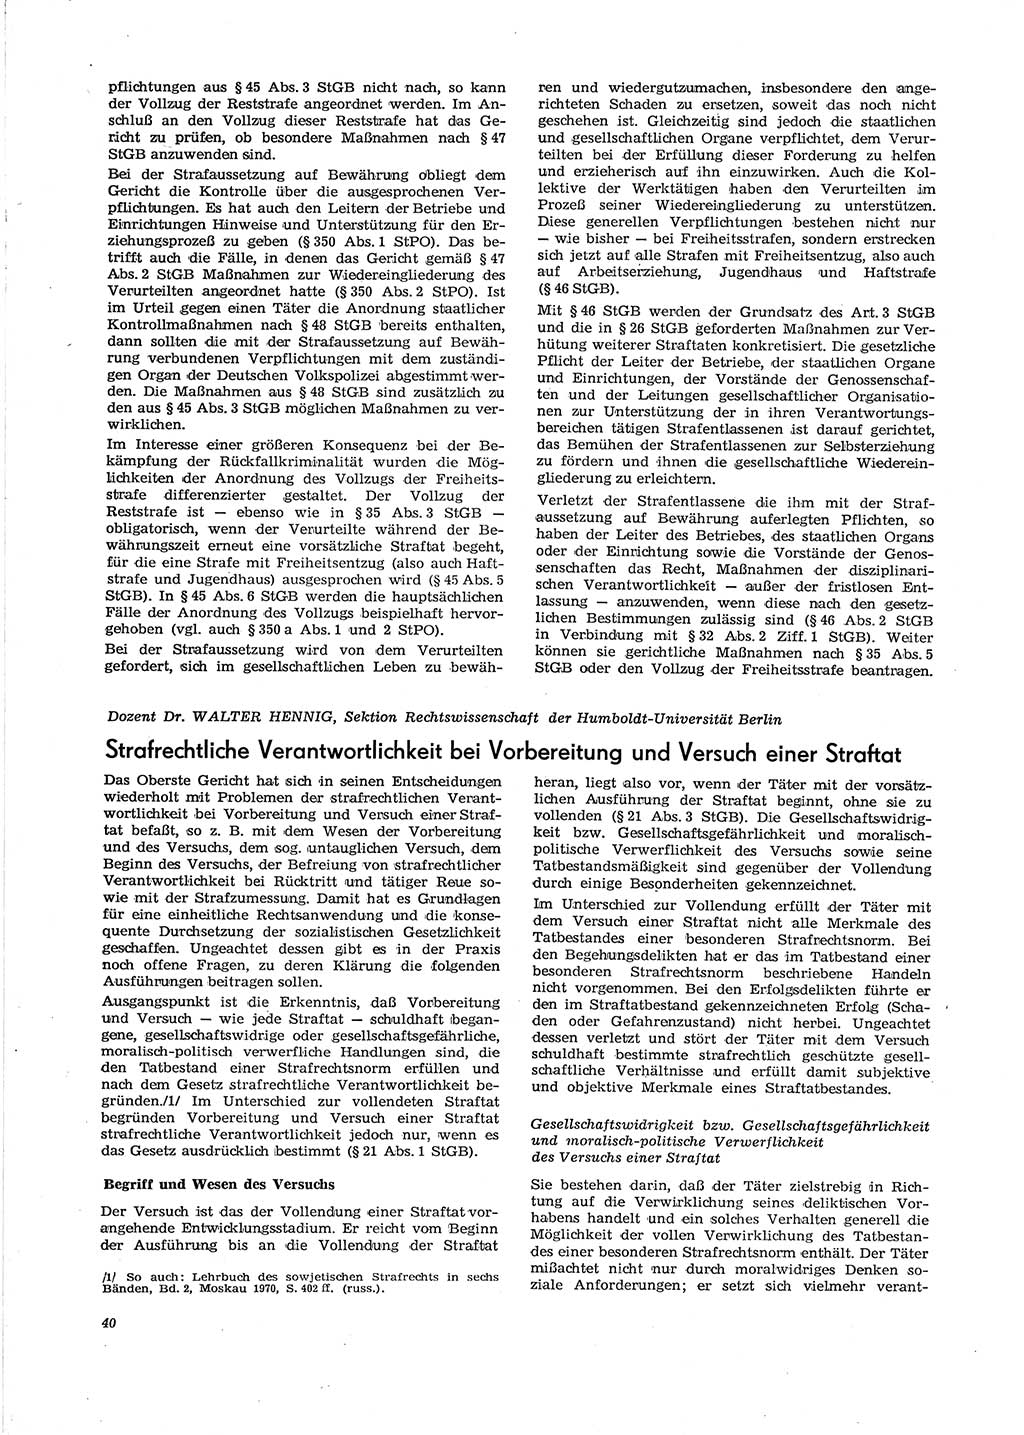 Neue Justiz (NJ), Zeitschrift für Recht und Rechtswissenschaft [Deutsche Demokratische Republik (DDR)], 29. Jahrgang 1975, Seite 40 (NJ DDR 1975, S. 40)